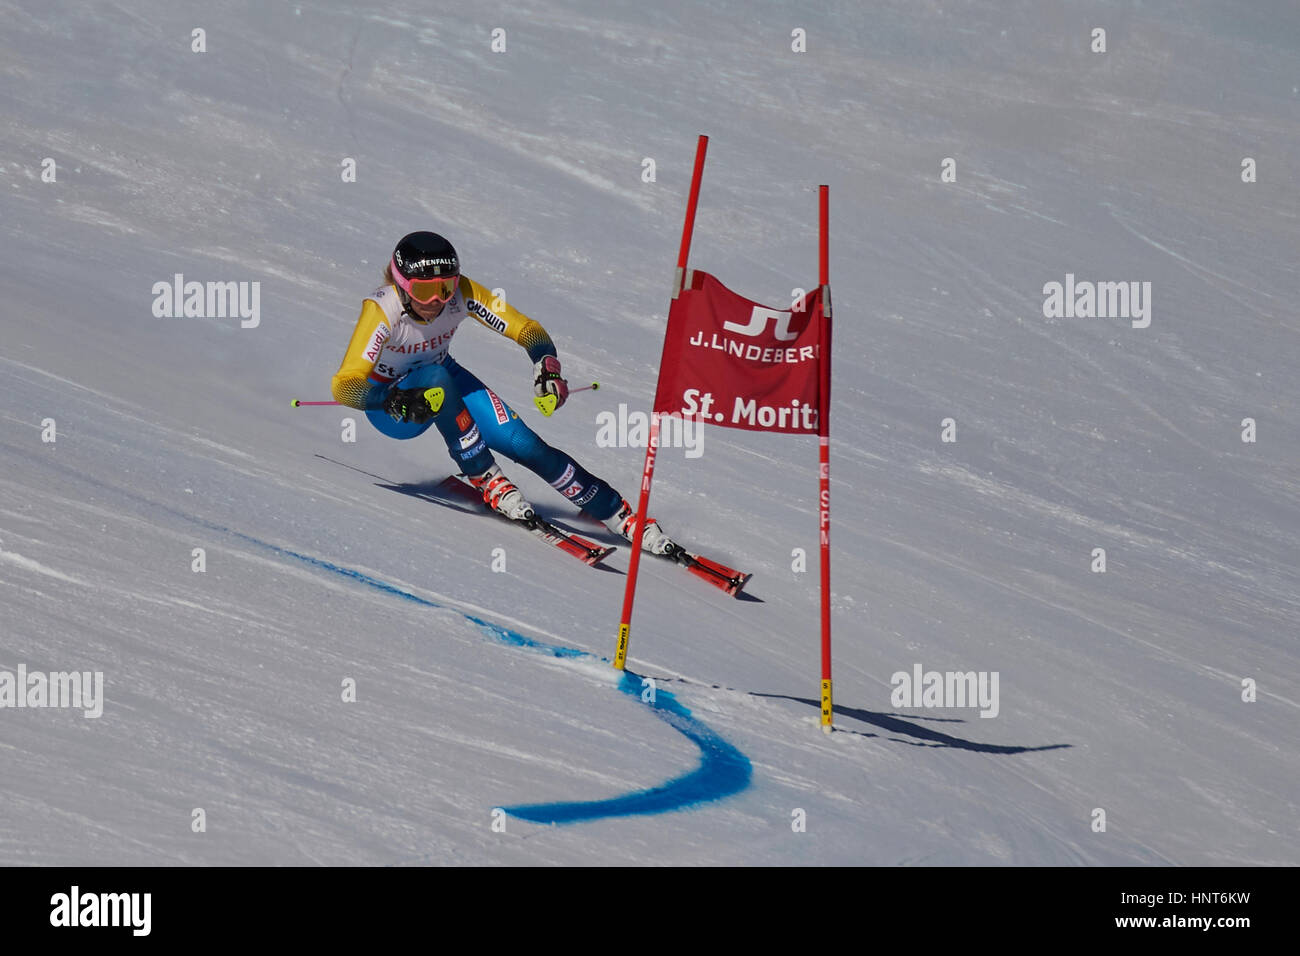 St. Moritz, Schweiz, 16. Februar 2017. Frida Hansdotter während die Damen Riesenslalom bei der FIS Alpinen Ski-WM 2017 in St. Moritz. Bildnachweis: Rolf Simeon/Alamy Live-Nachrichten Stockfoto